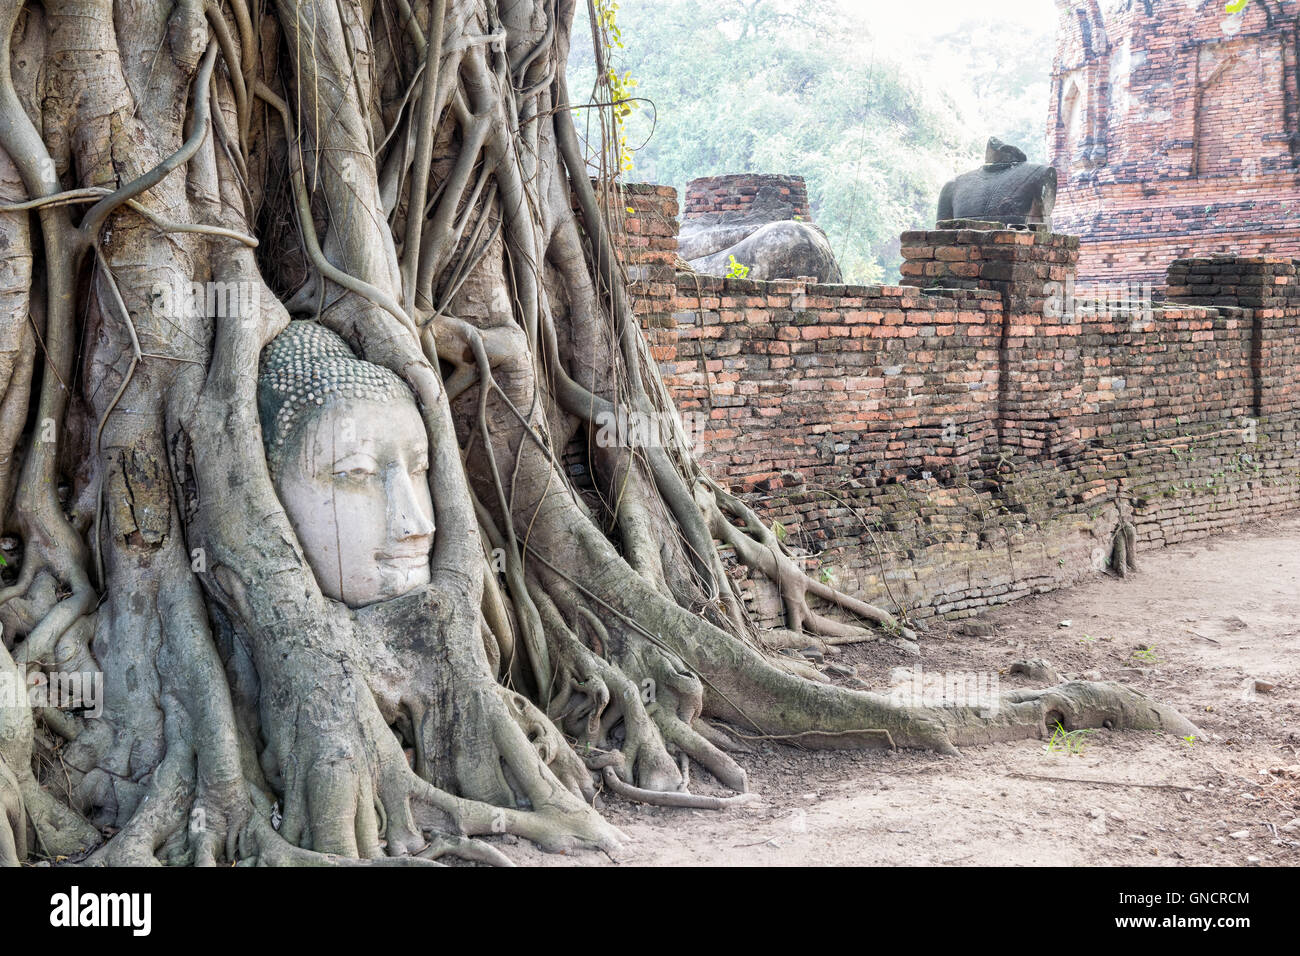 Piezas de cabeza de las ruinas de la antigua estatua de Buda fueron cubiertos hasta las raíces de un árbol de banyan en el antiguo muro de Wat Phra Mahathat templo Foto de stock